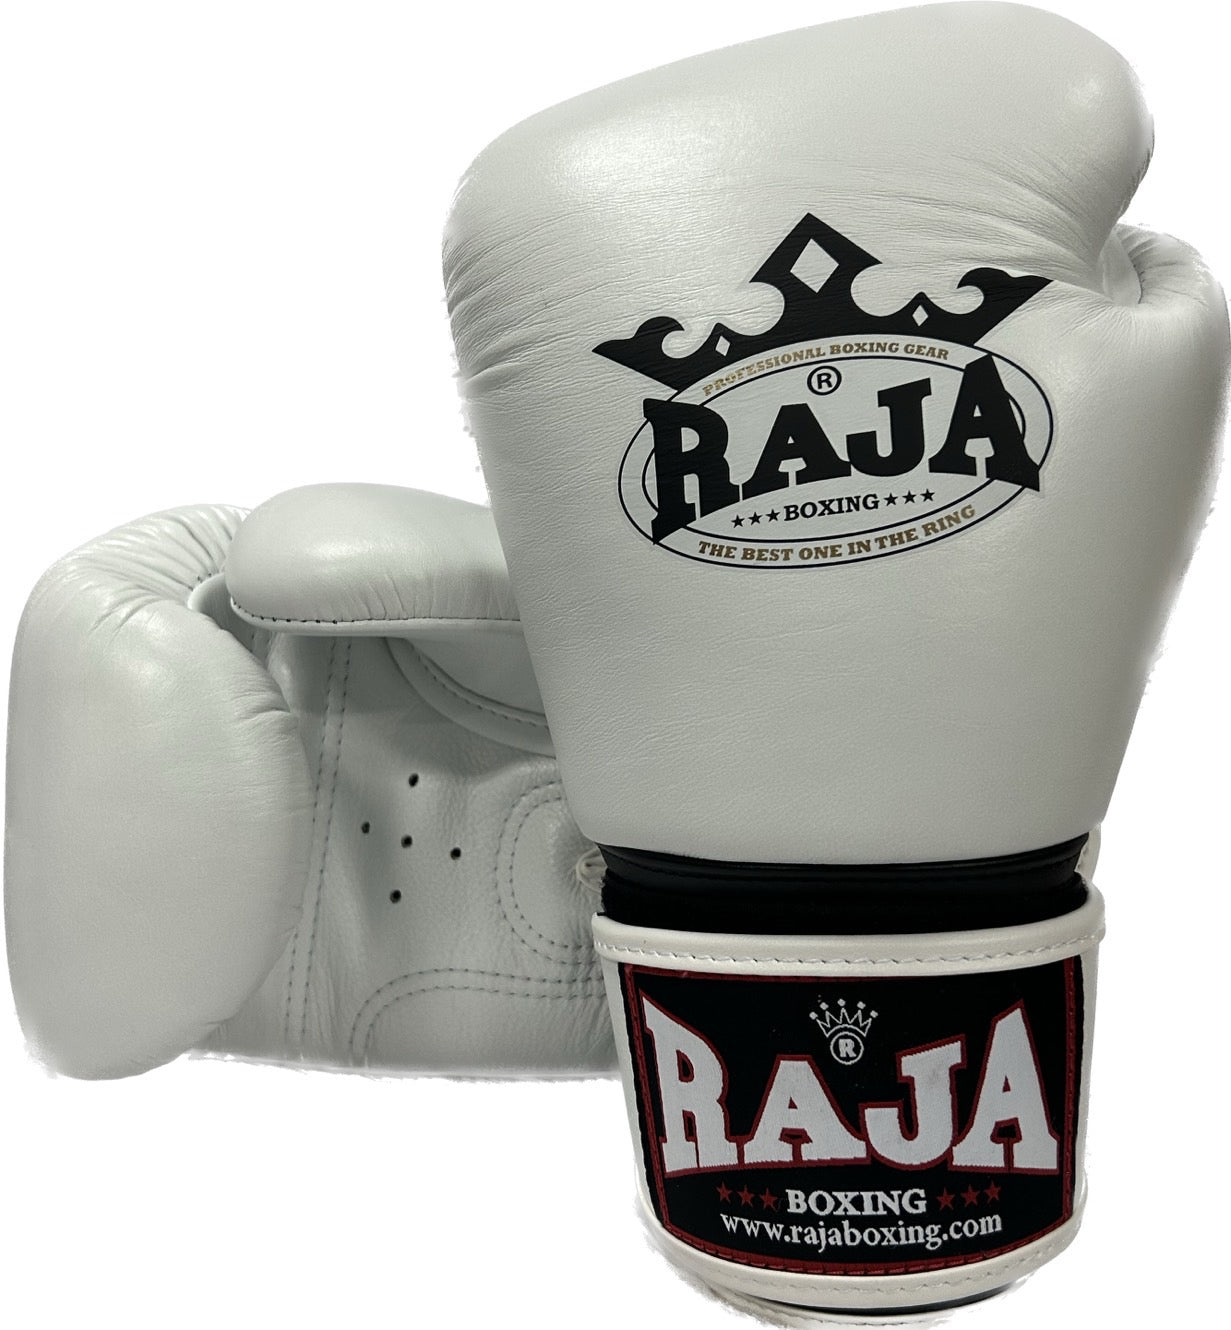 Raja Boxing Gloves RBGV-1 White